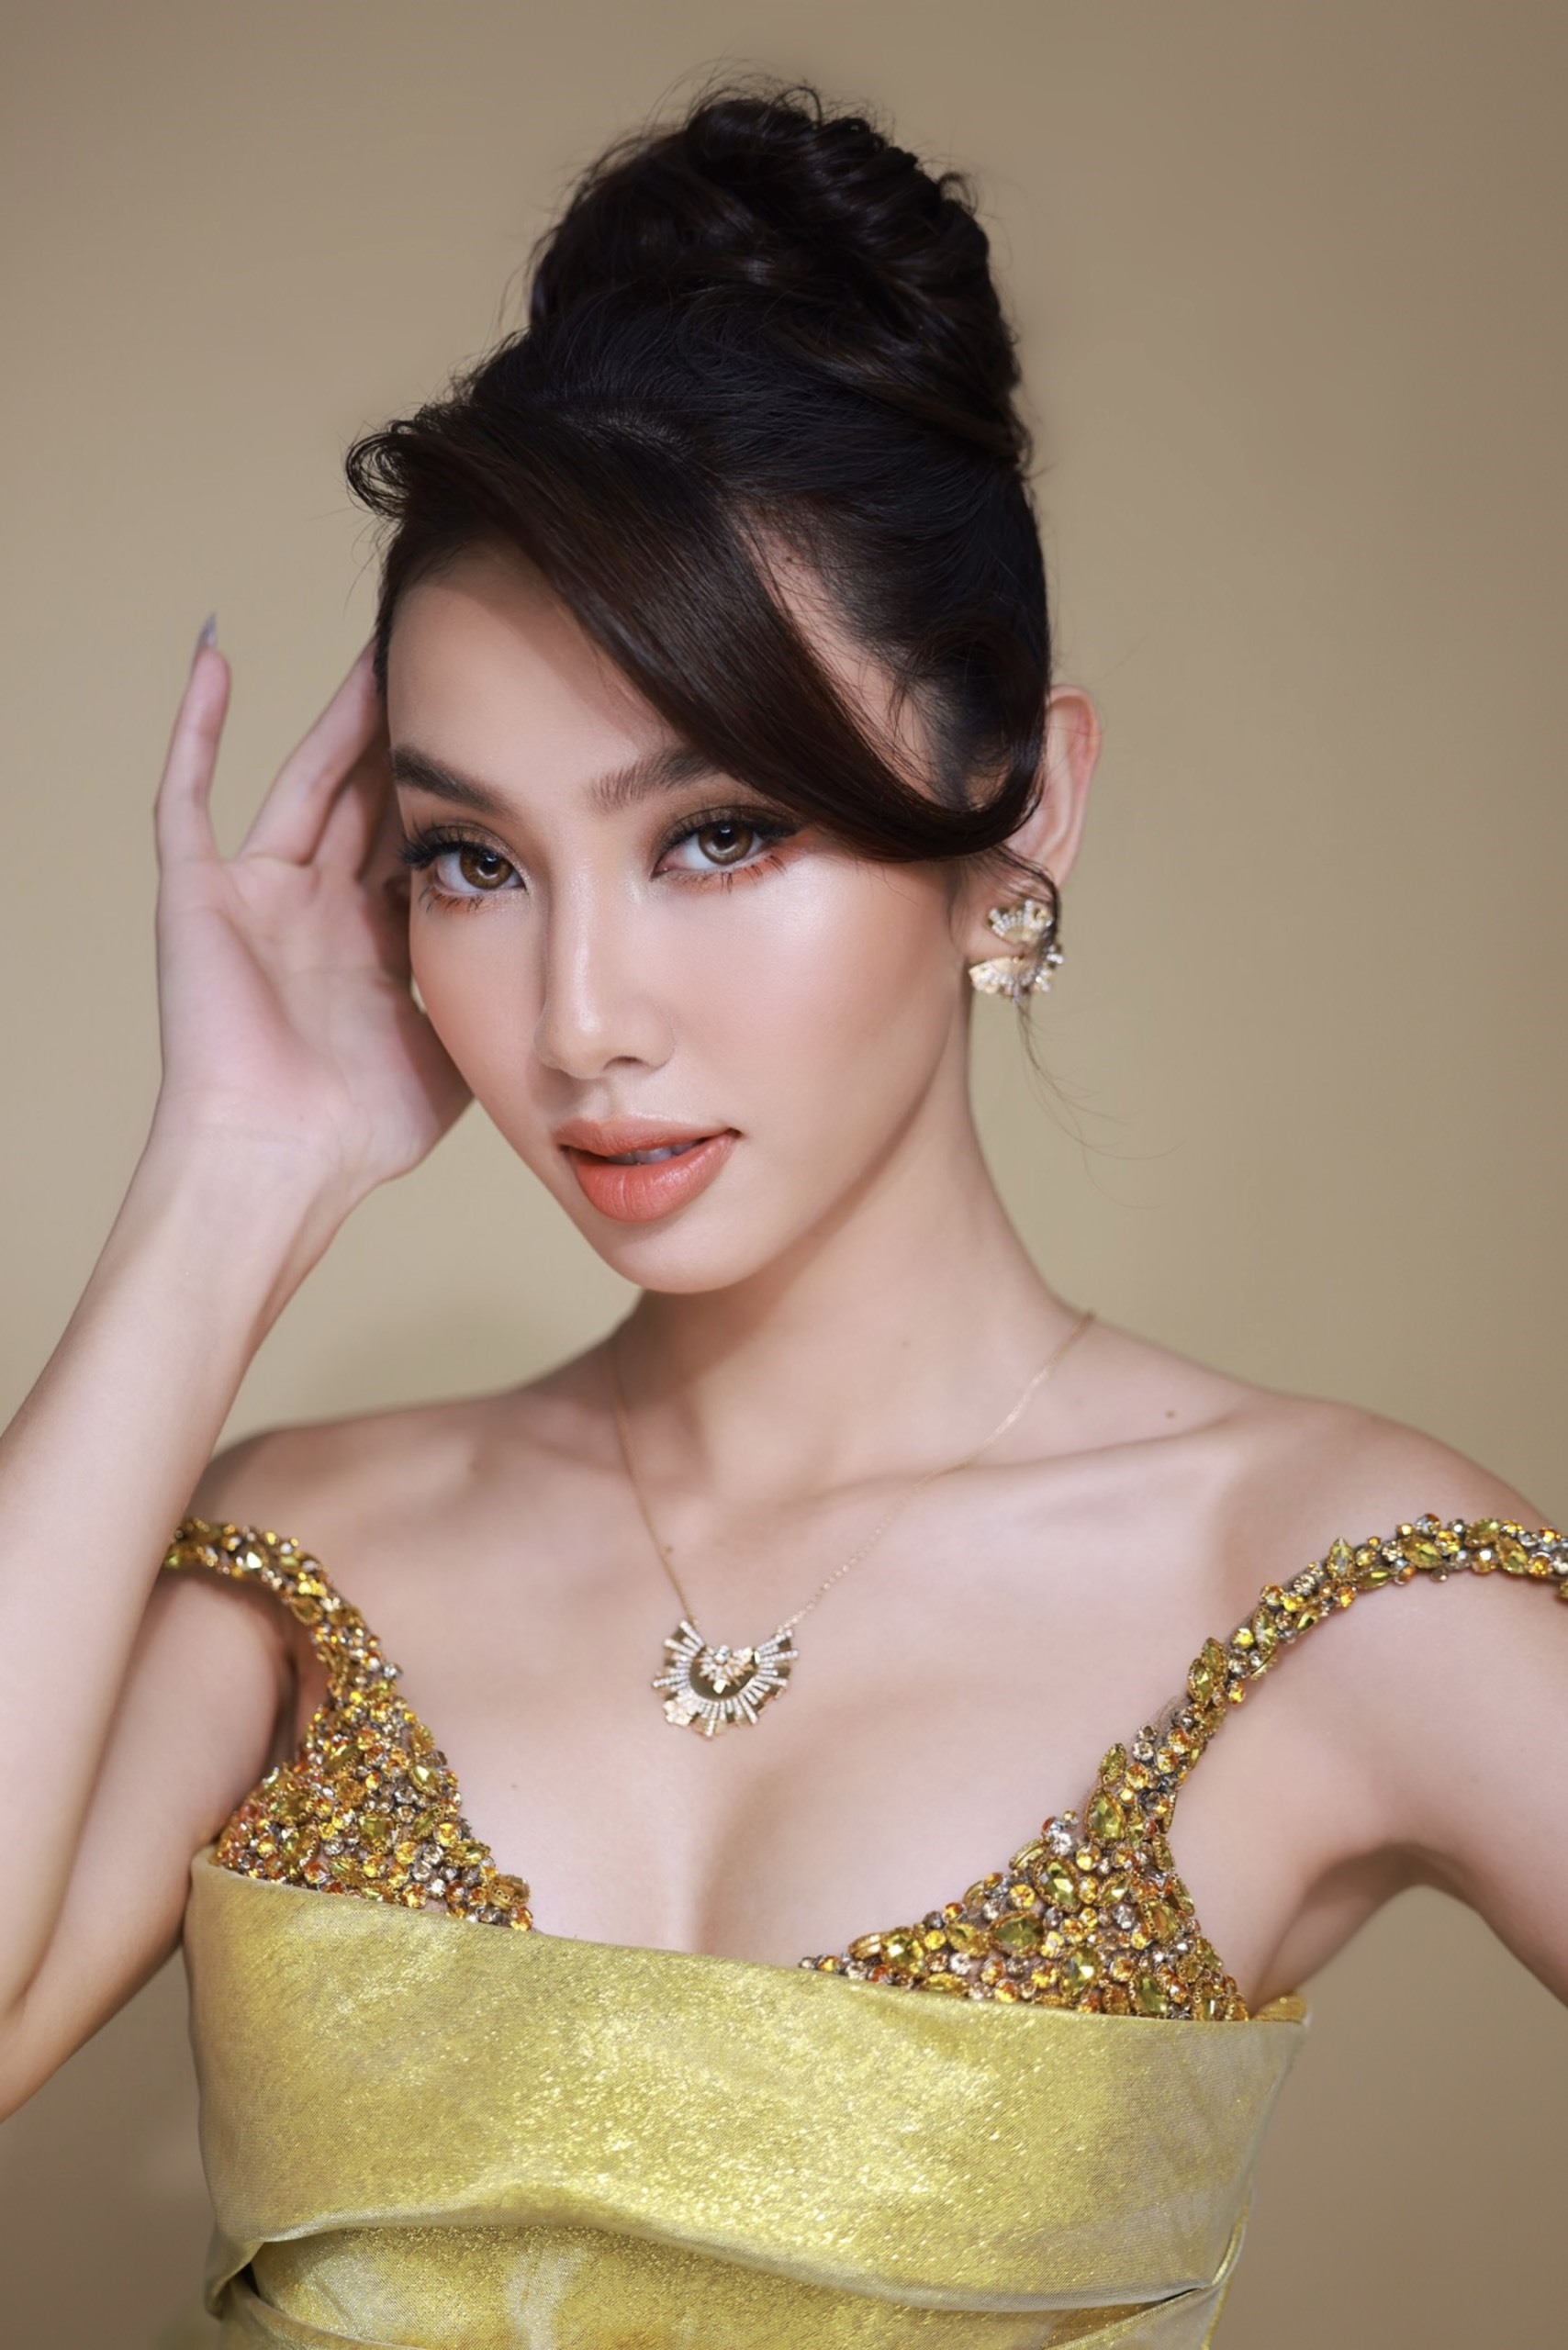 Người đẹp khoe vóc dáng quyến rũ với thiết kế bắt mắt của nhà thiết kế Nguyễn Tiến Truyển, điểm tô thêm bộ trang sức tông vàng sang trọng.